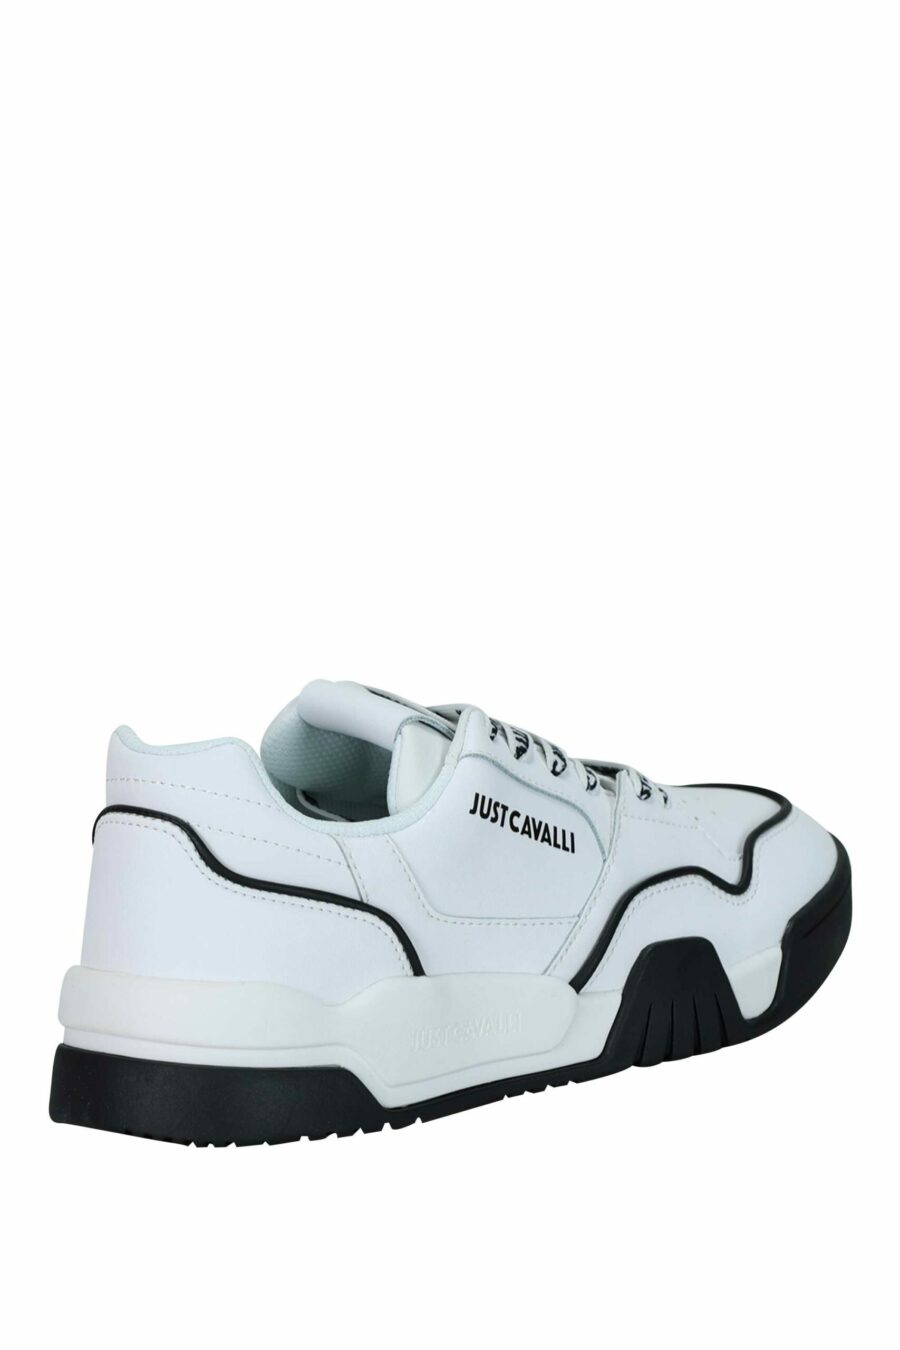 Zapatillas blancas con detalles negros y logo monocromático - 8052672737144 1 scaled